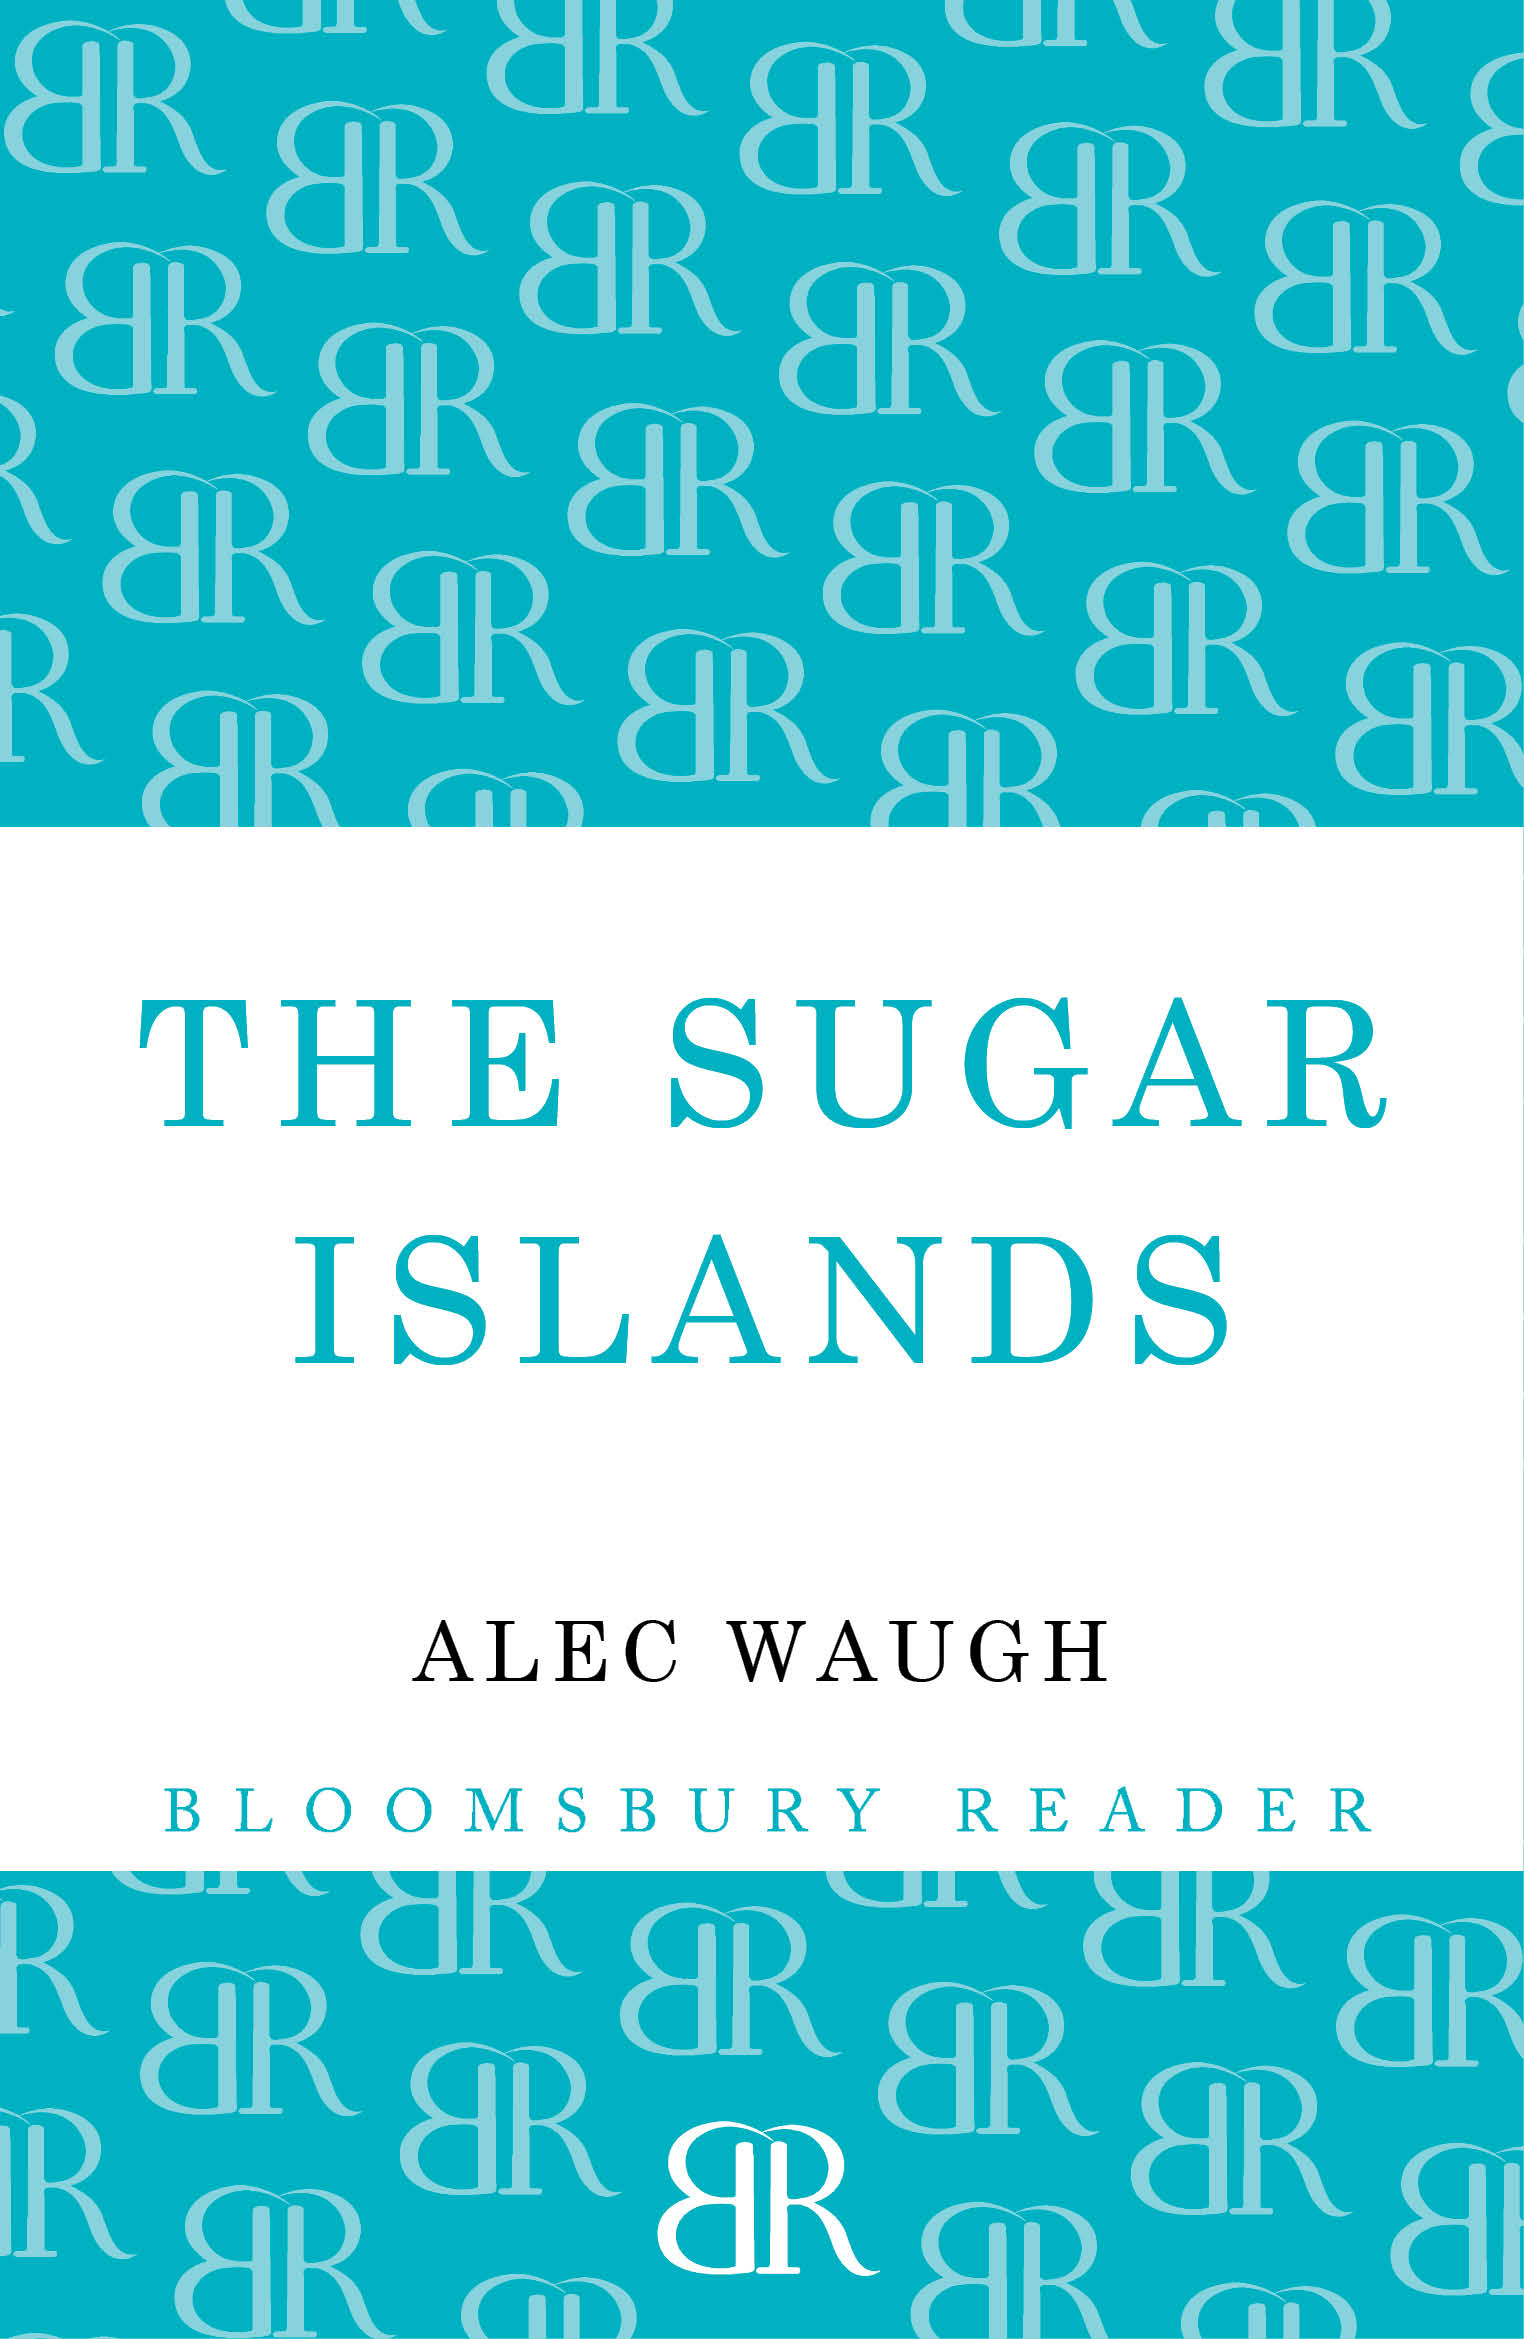 The Sugar Islands by Alec Waugh